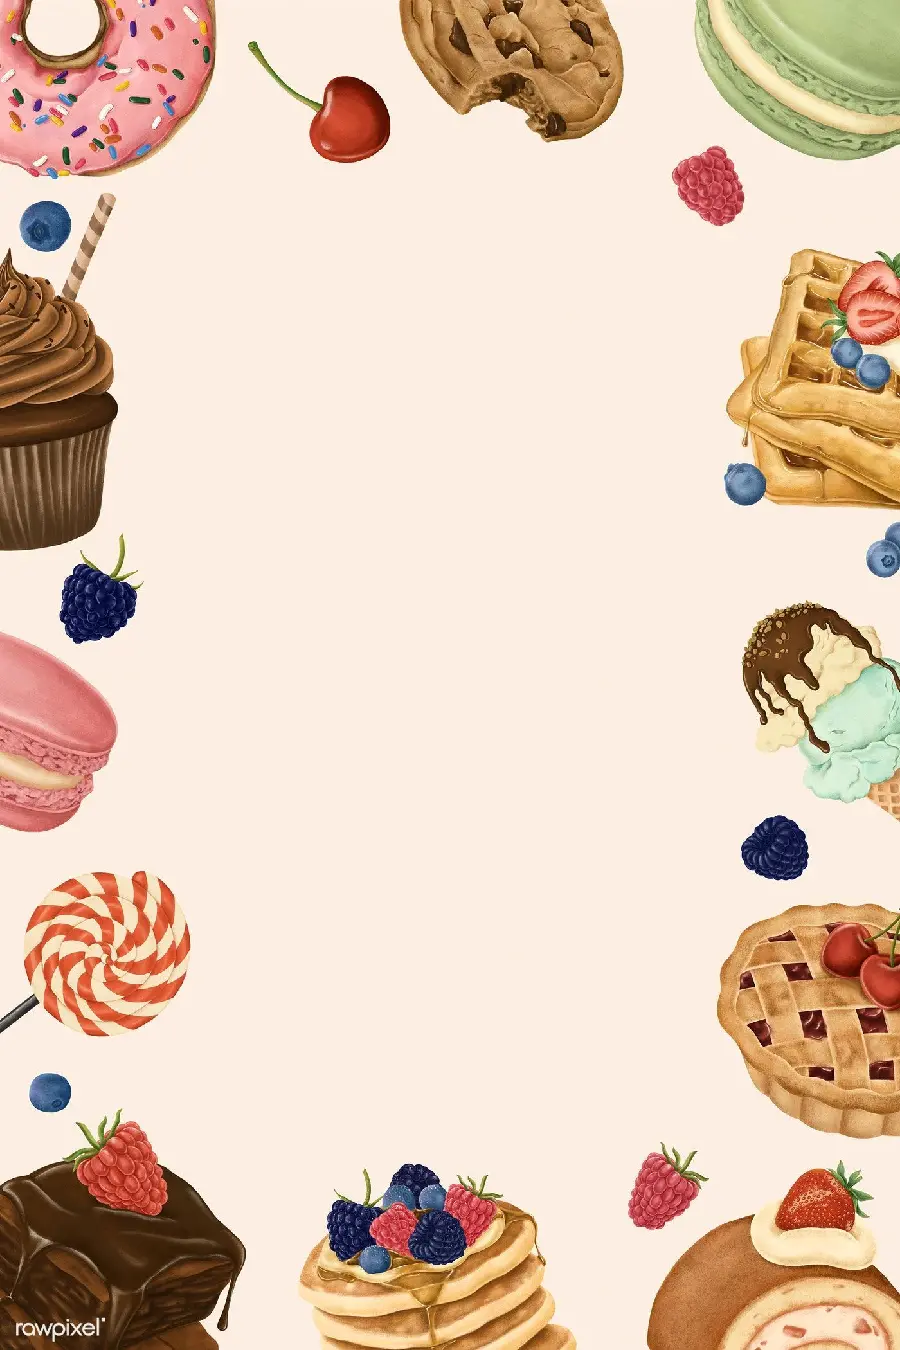 دانلود والپیپر ساده با قاب طرح کیک و شیرینی خوشمزه گرافیکی مخصوص نوشتن متن و کاور پاور پوینت و هایلایت استوری 